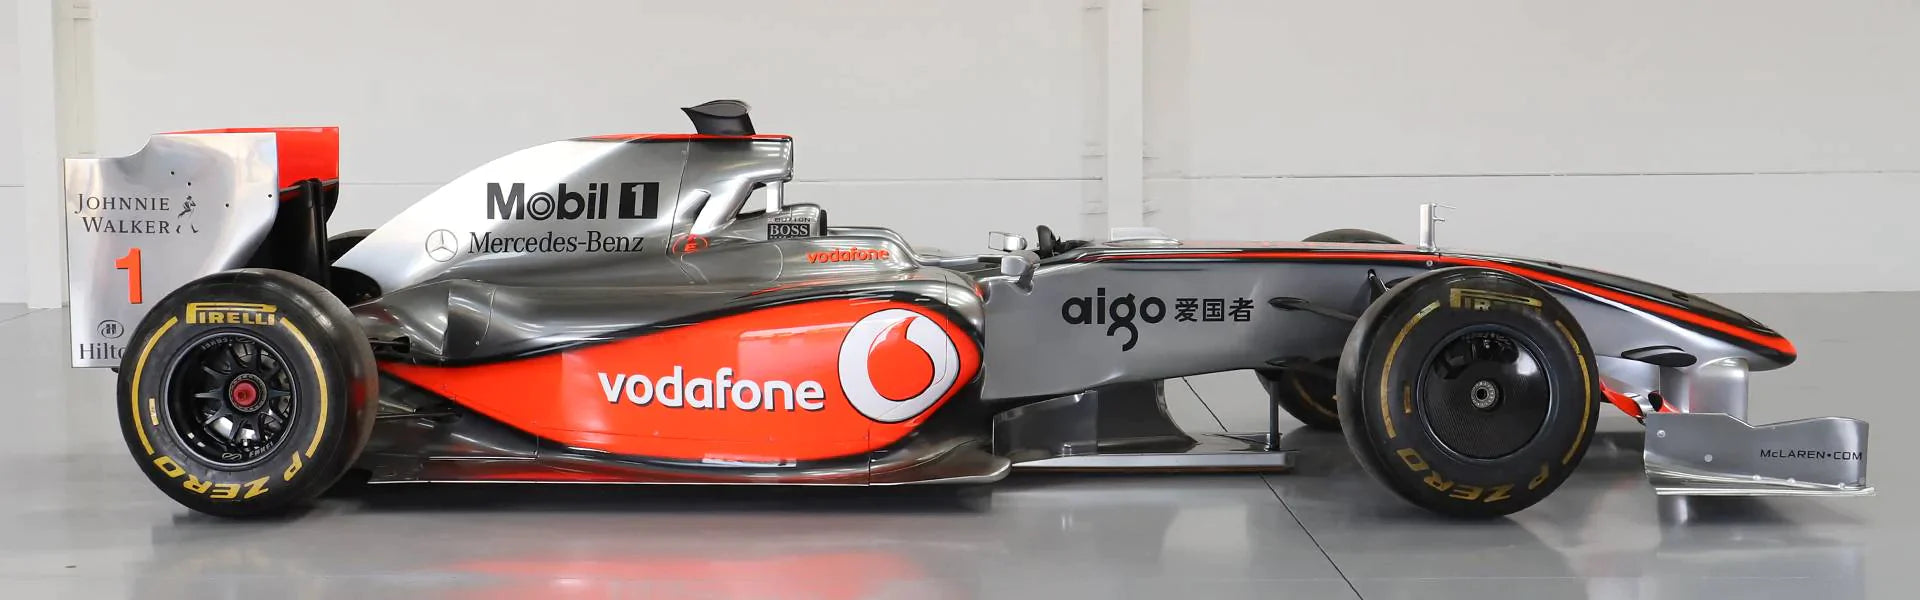 2009 McLaren MP4-24 Official Show Car